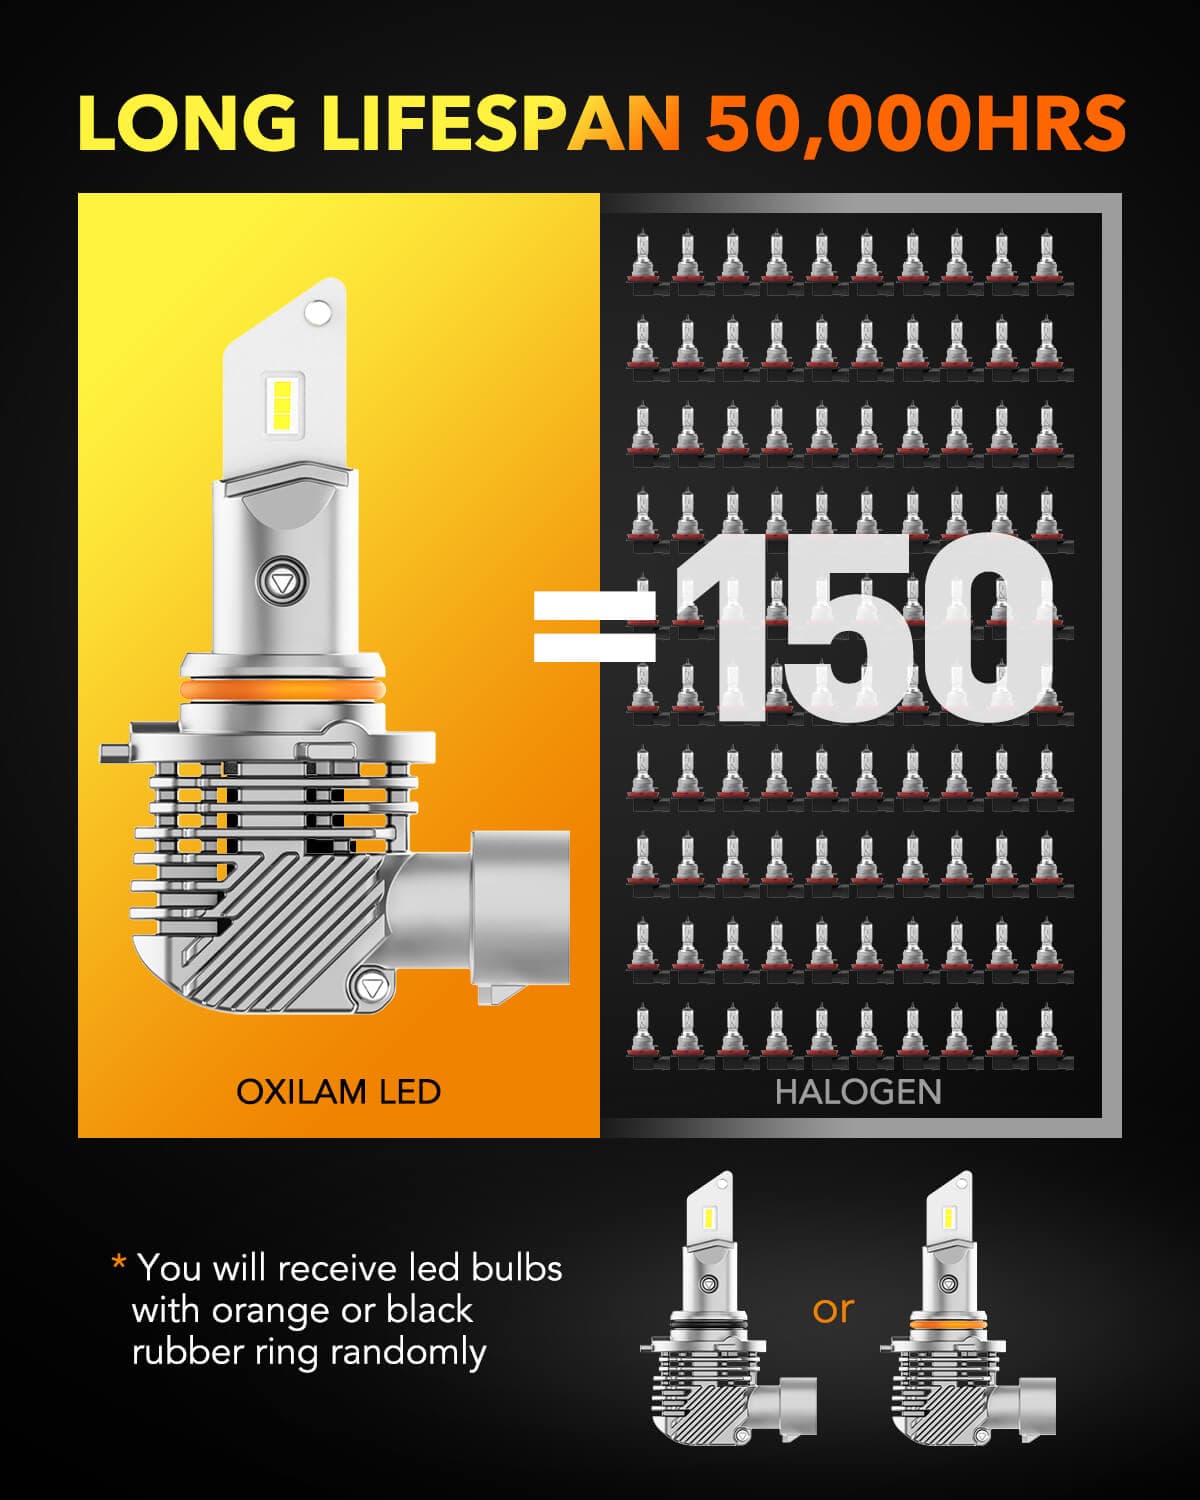 Ampoules HB3 9005 LED ventilées compactes 75W blanc - Next-Tech®